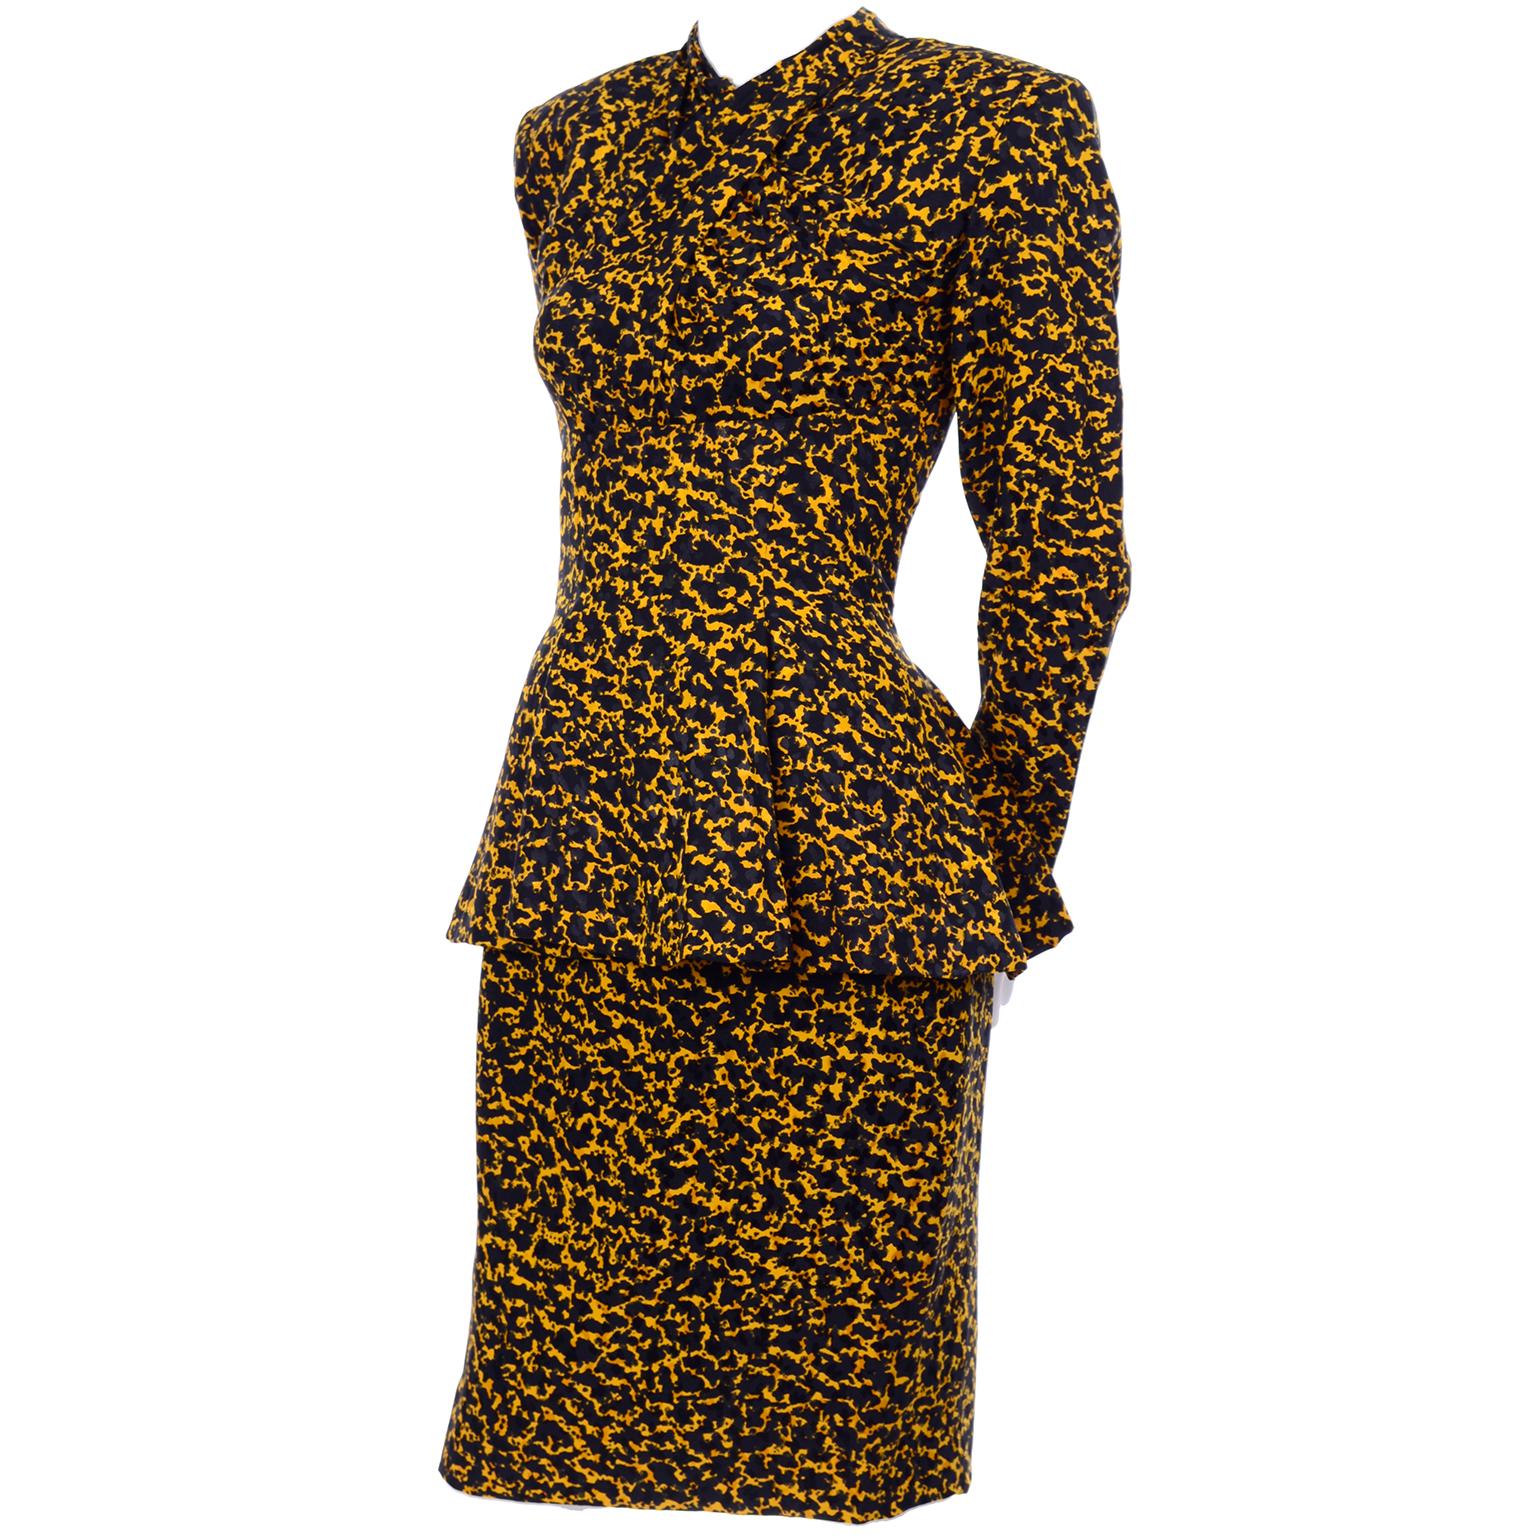 Il s'agit d'un tailleur jupe en soie vintage Vicky Tiel Couture acheté à Bergdorf Goodman dans les années 1980. Ce joli costume ressemble à une robe lorsqu'il est porté. L'ensemble est composé d'un imprimé abstrait noir et jaune 100 % soie qui